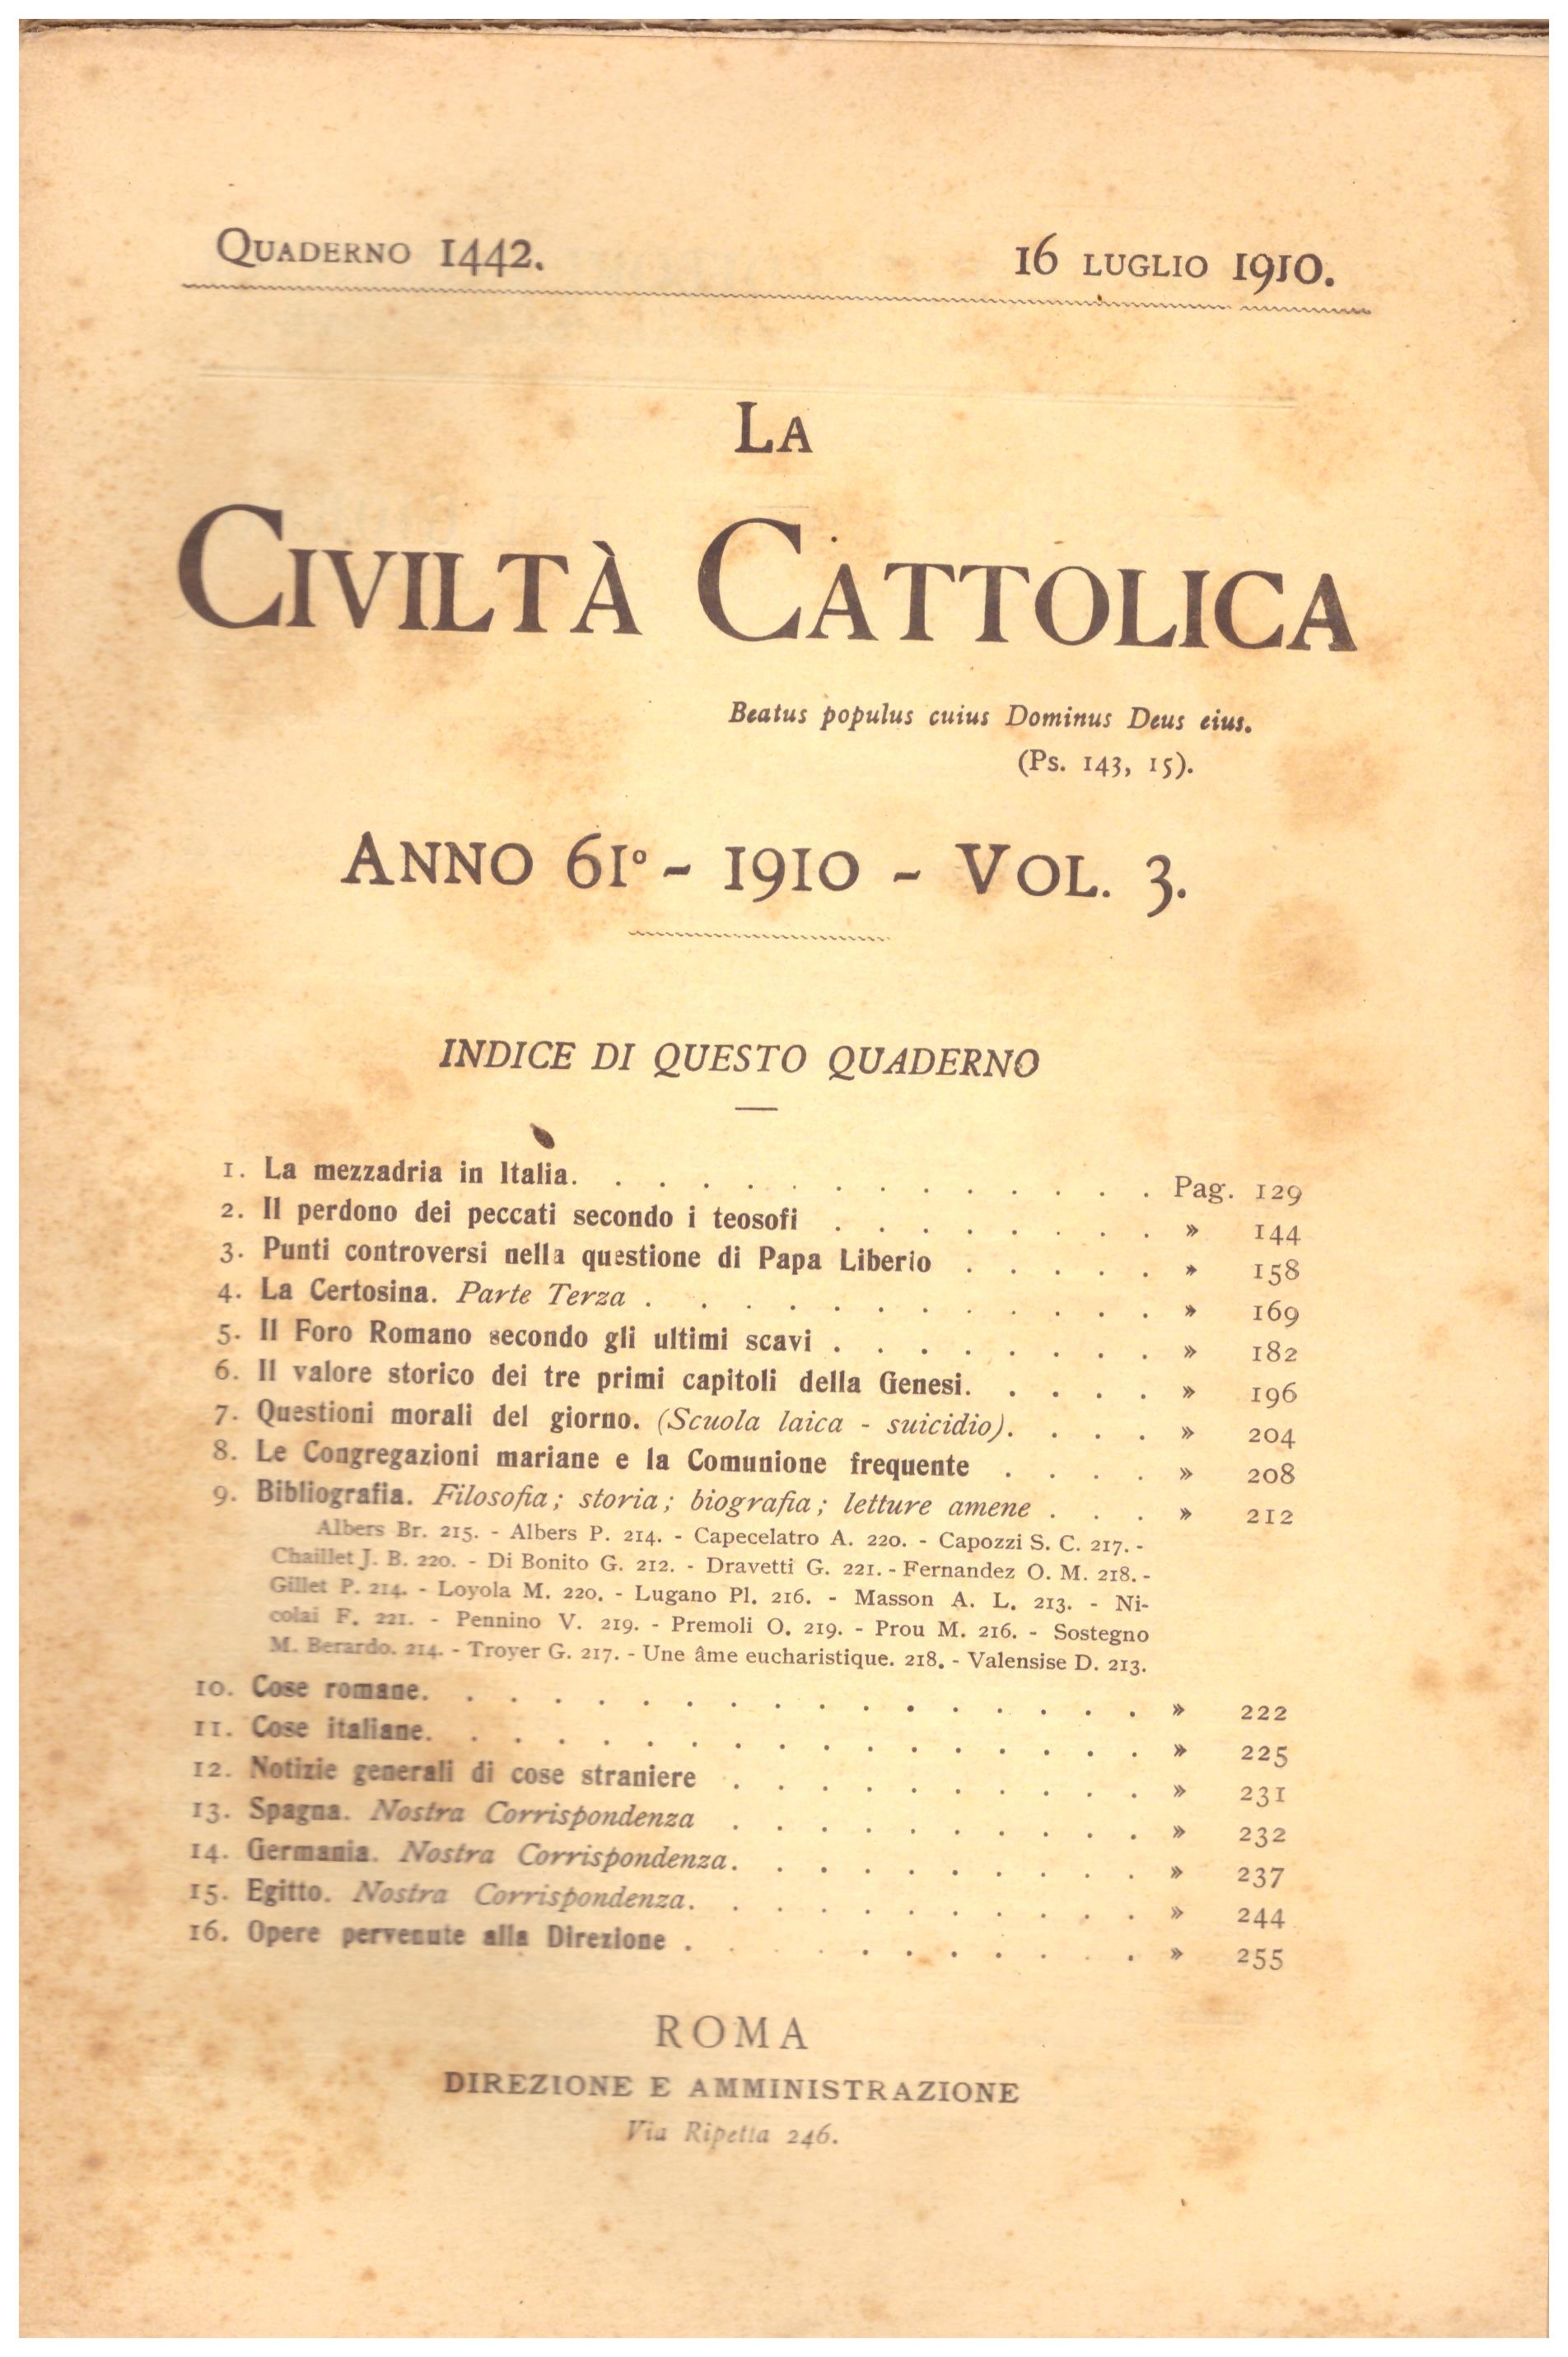 Titolo: La civiltà cattolica quaderno 1442 Autore: AA.VV.  Editore: Roma direzione amministrativa Via di Ripetta 246